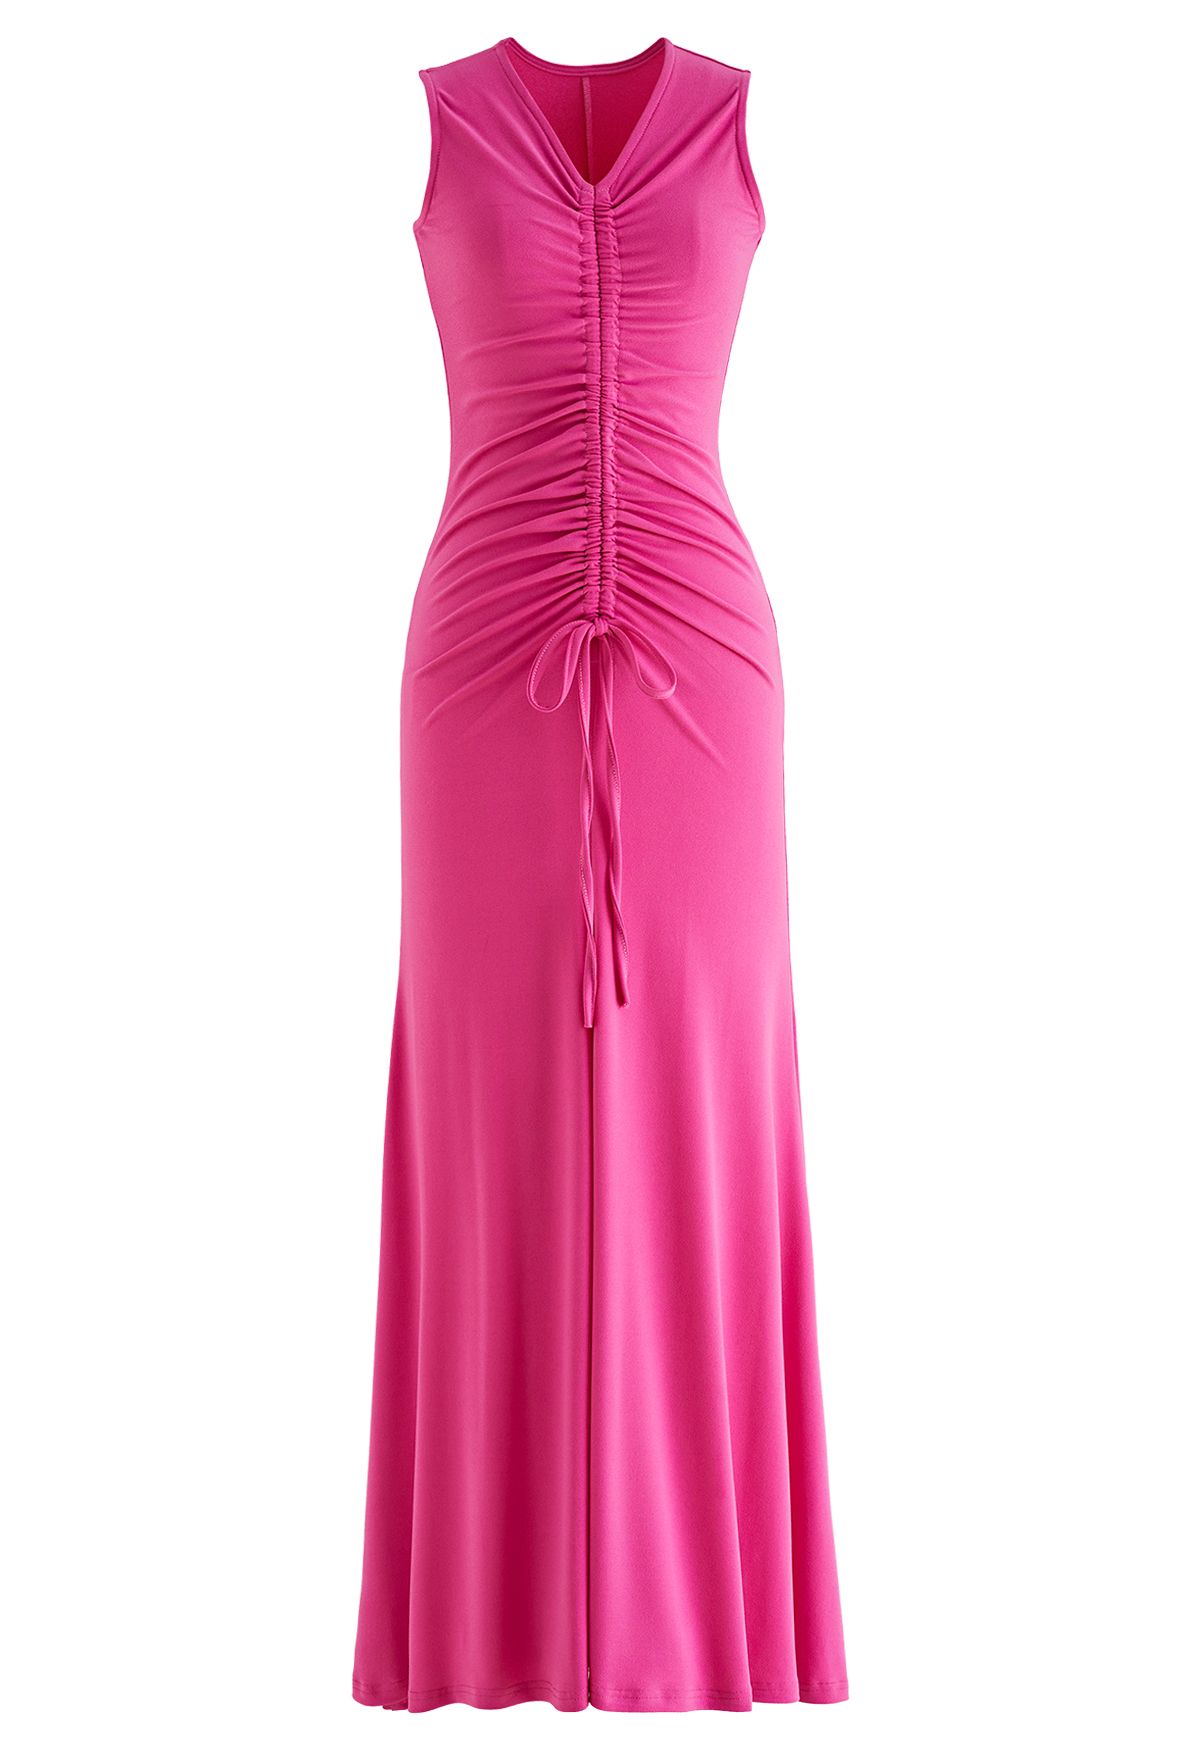 Ärmelloses Kleid mit V-Ausschnitt, Kordelzug und Rüschen in Hot Pink